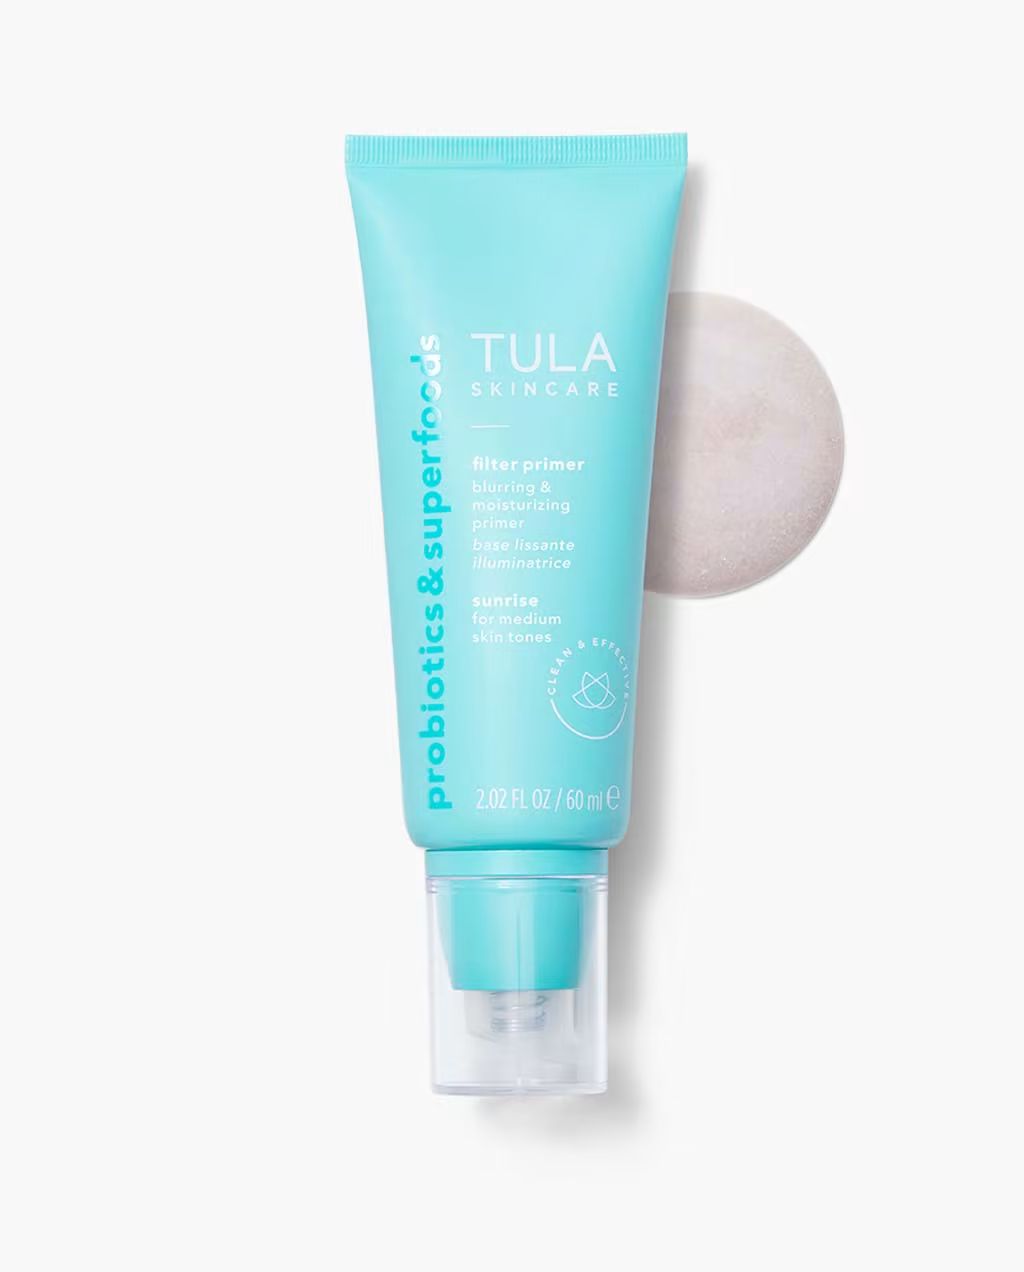 blurring & moisturizing primer (sheerly tinted) | Tula Skincare